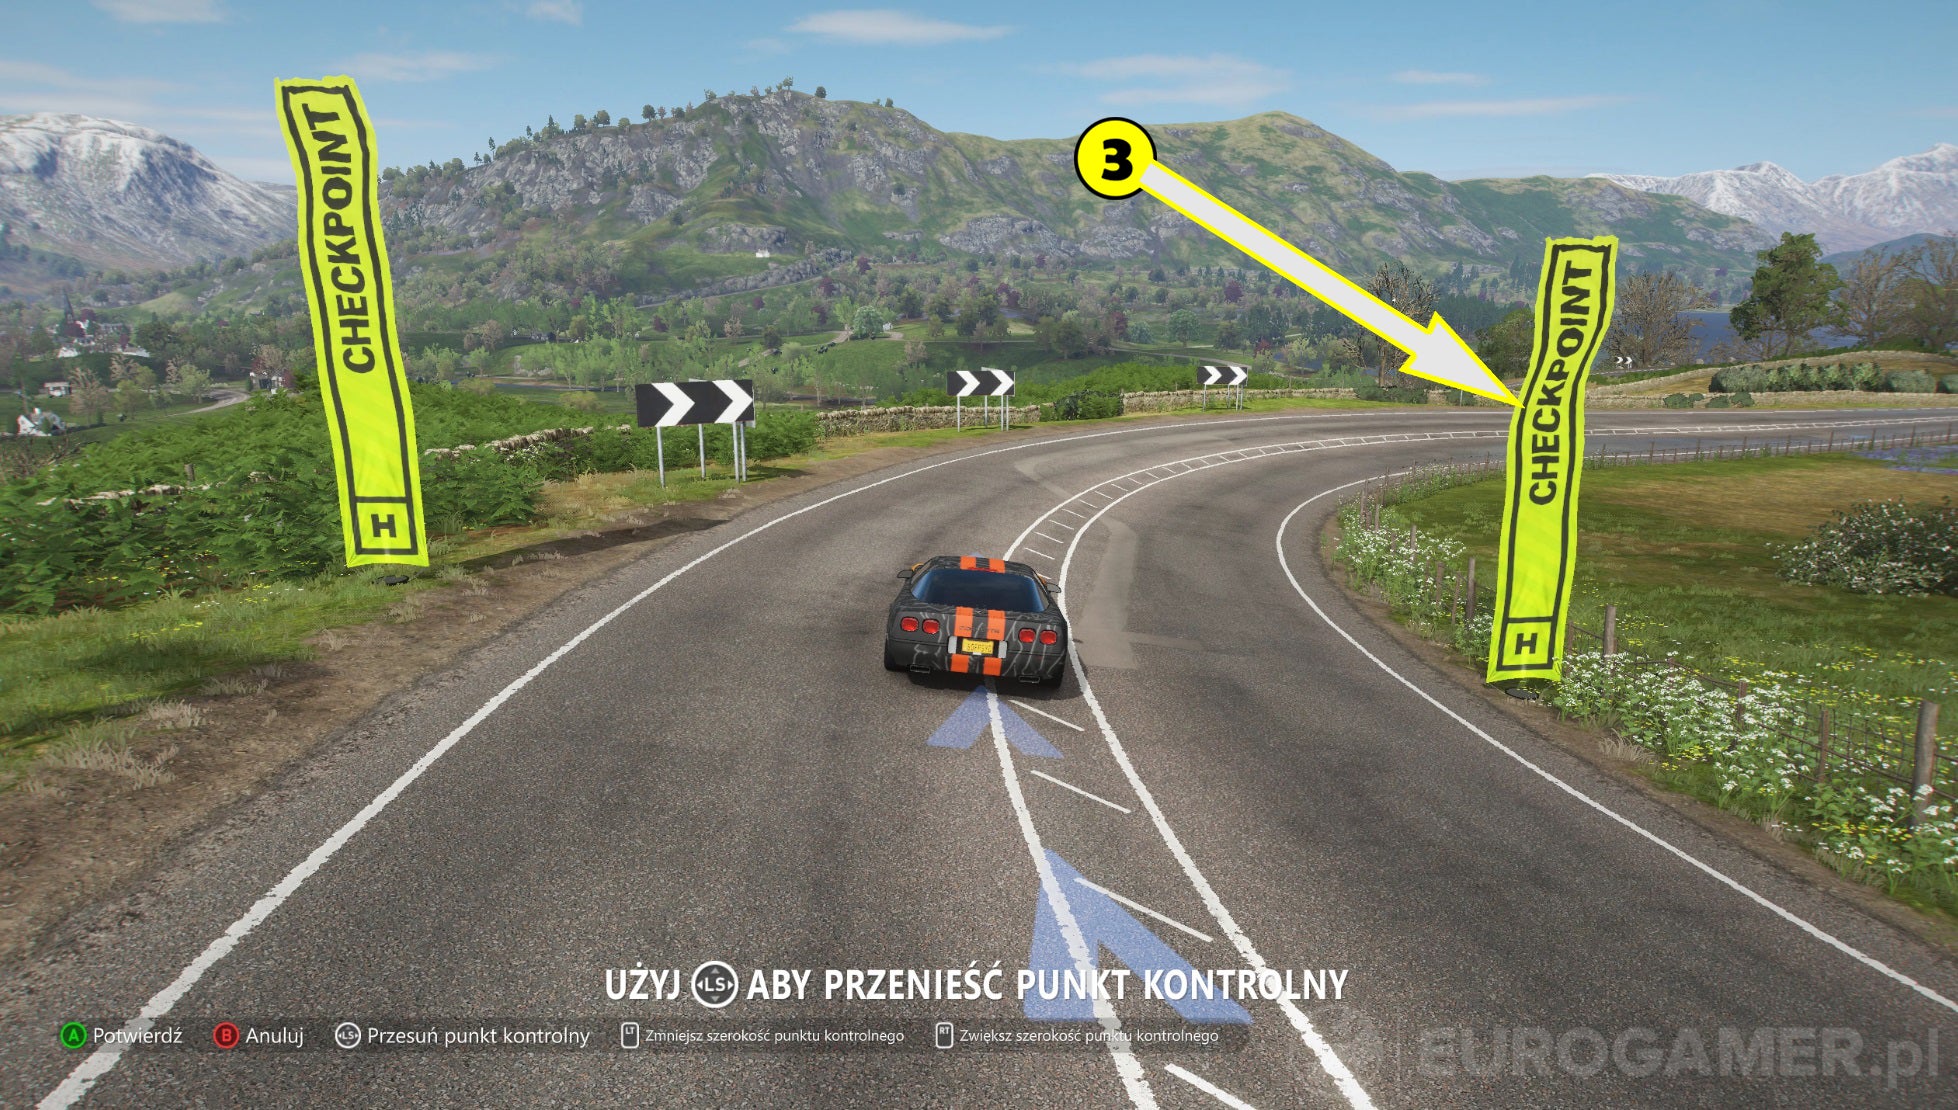 Obrazki dla Forza Horizon 4 - jak stworzyć trasę, edytor